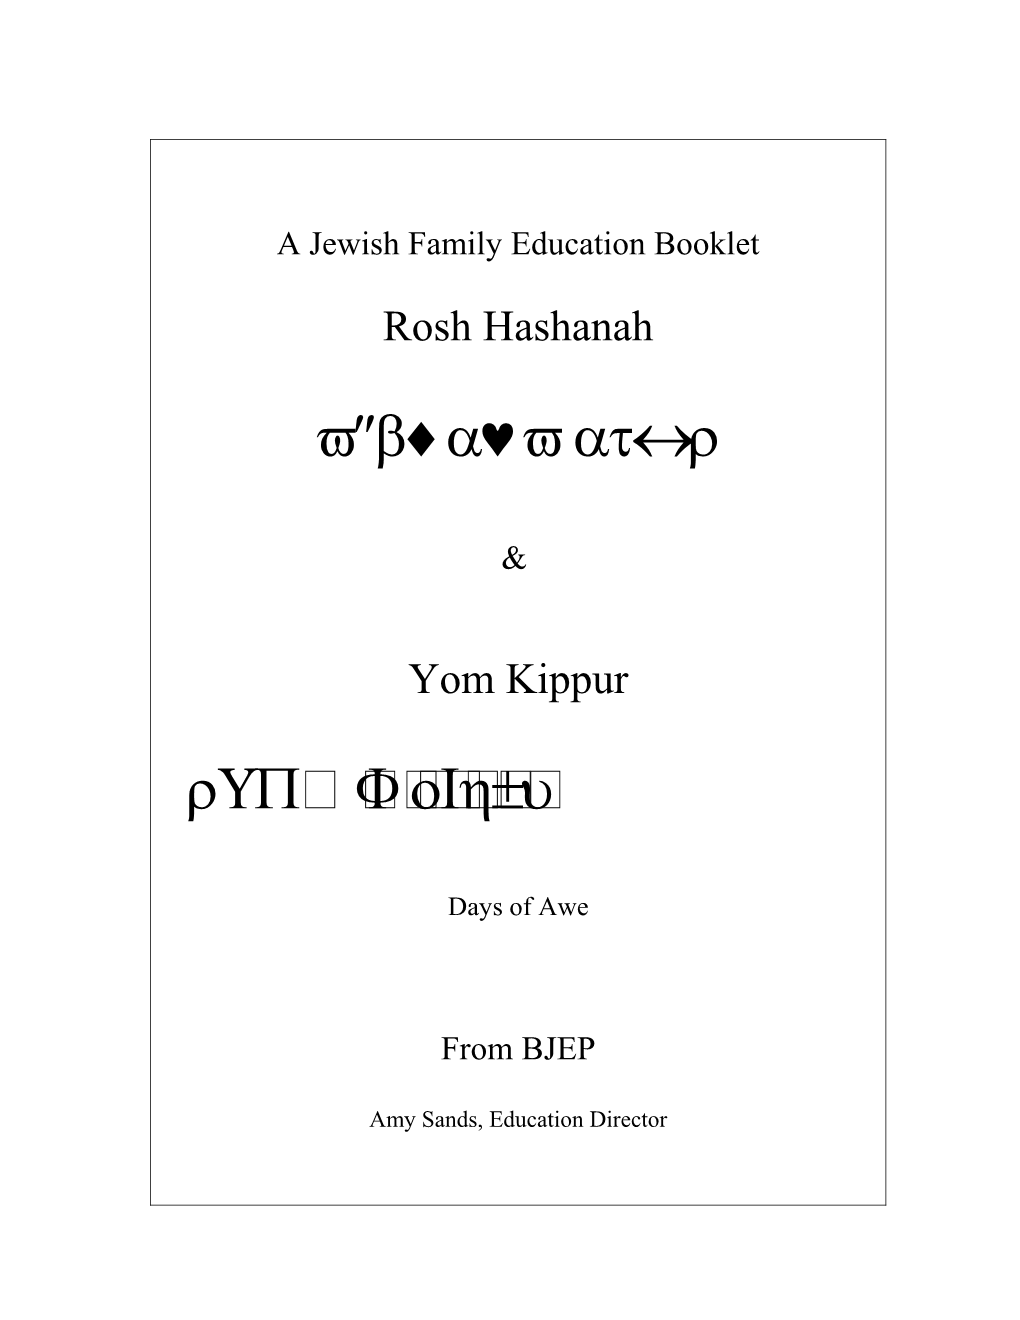 Rosh Hashana and Yom Kippur